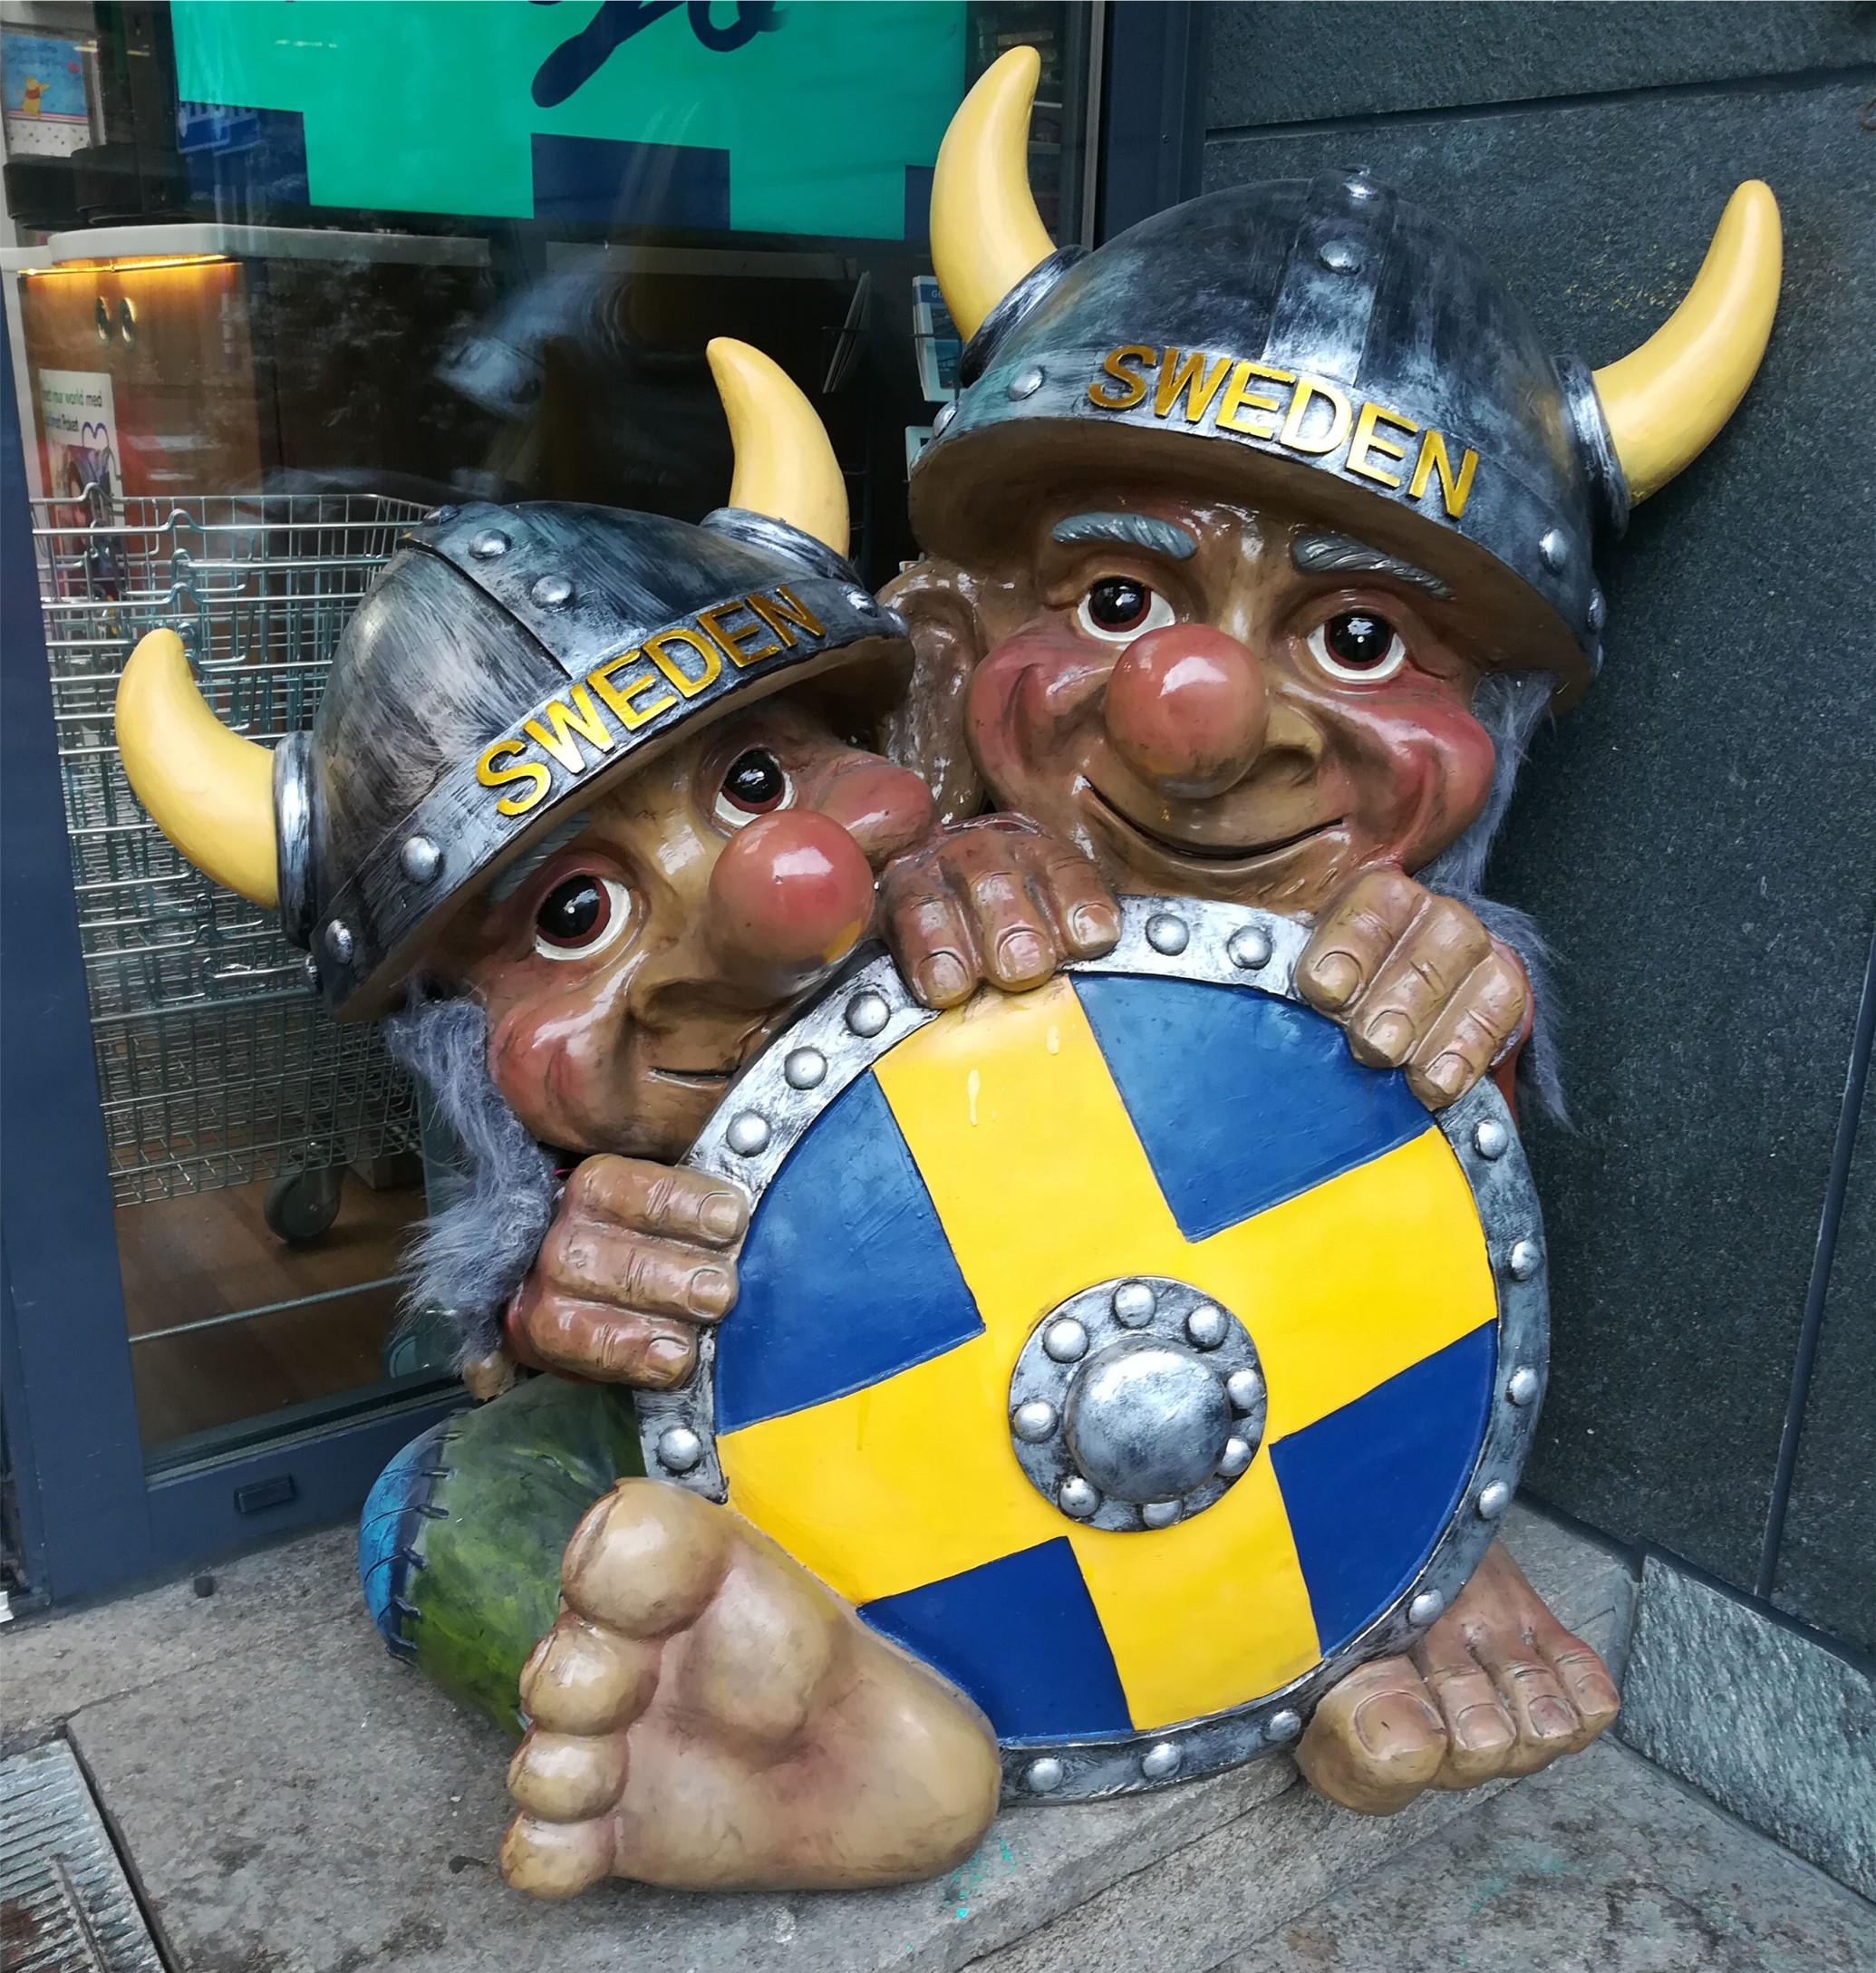 Trolliges aus Sweden